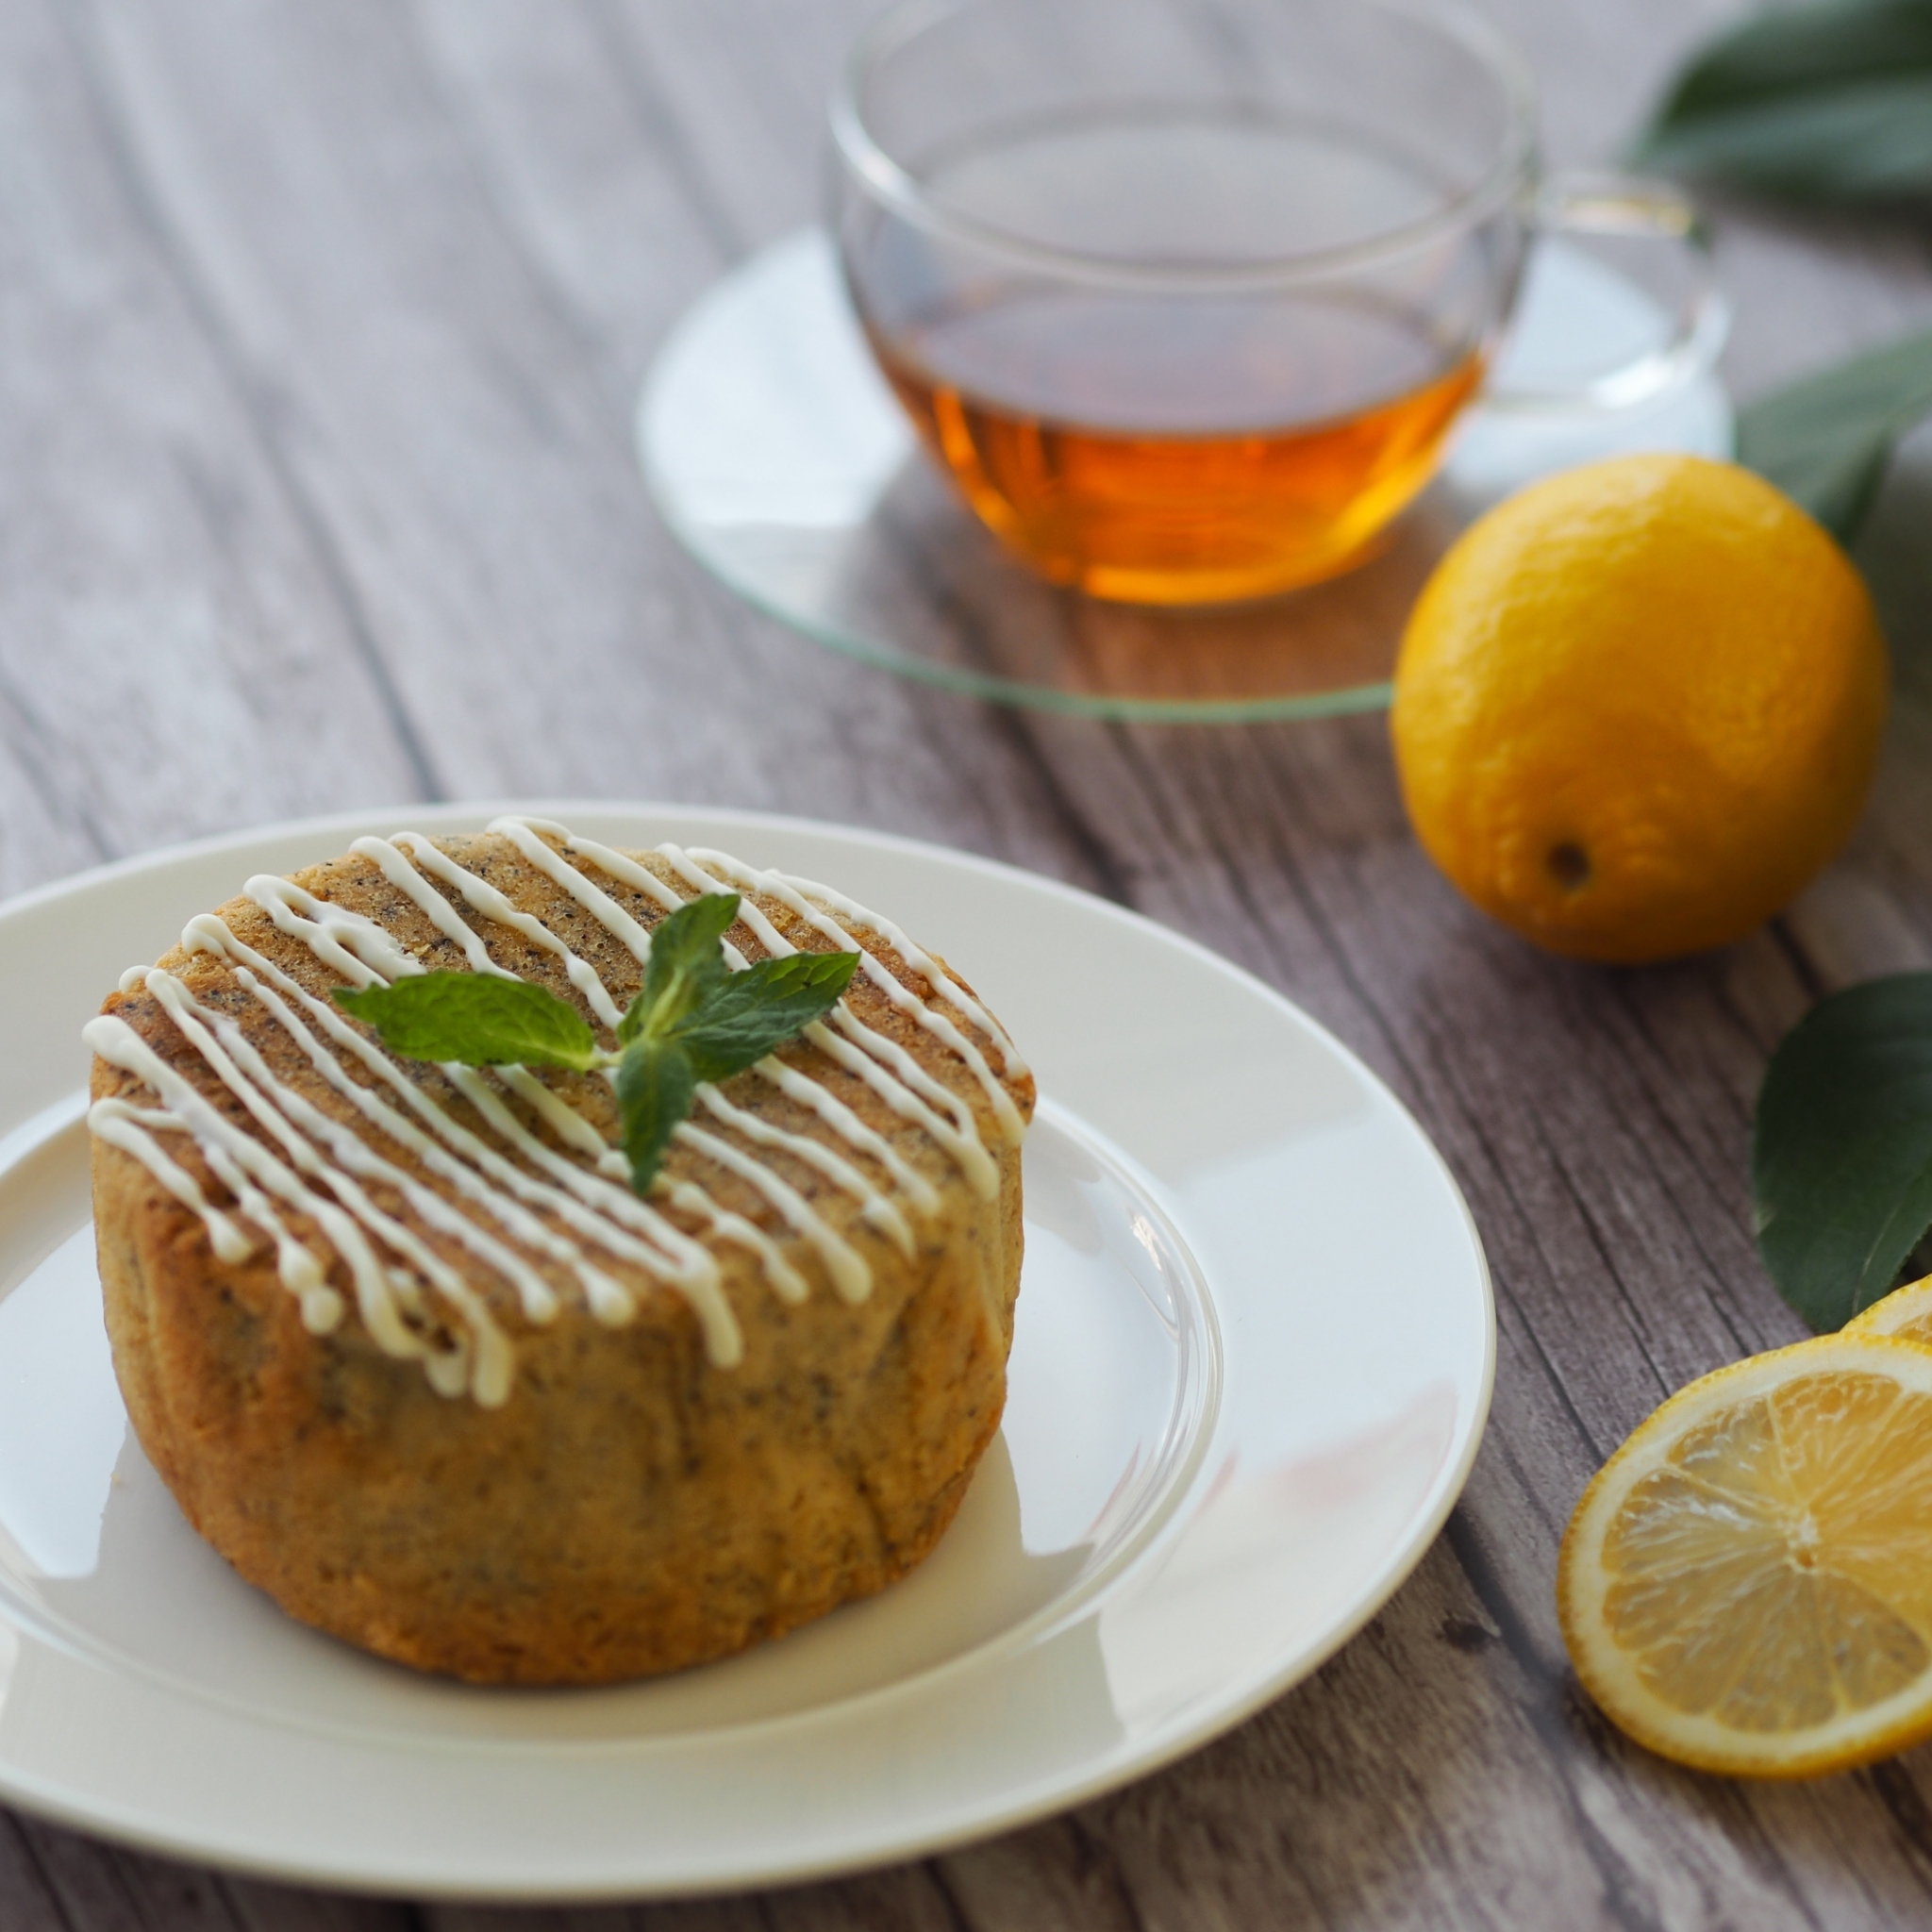 グルテンフリーで安心「玄米マルチミックスパウダー」レシピ「レモンティーケーキ」